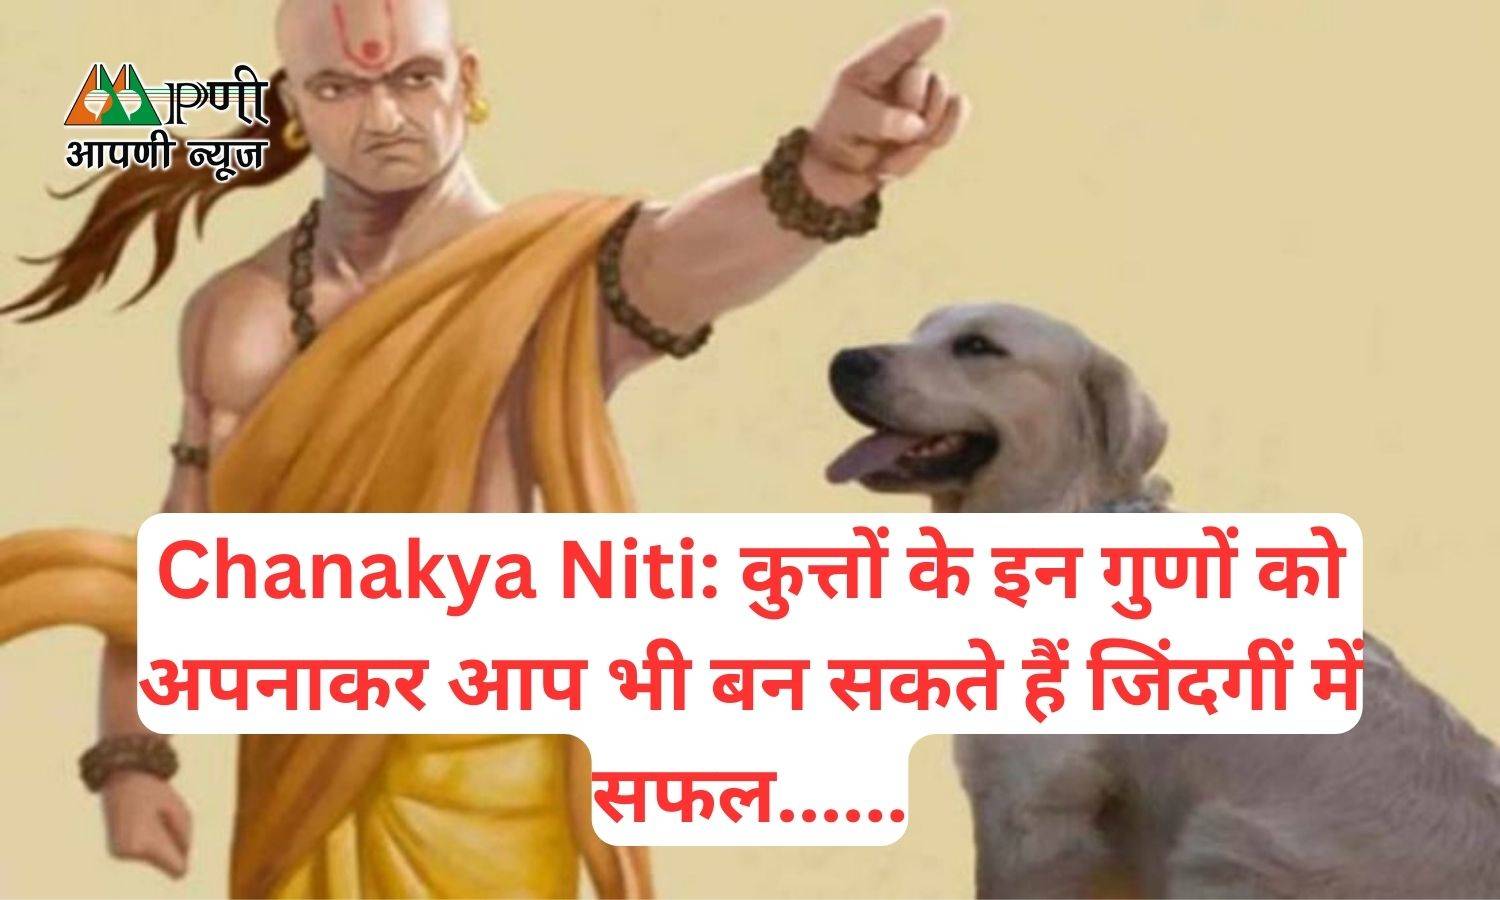 Chanakya Niti: कुत्तों के इन गुणों को अपनाकर आप भी बन सकते हैं जिंदगीं में सफल......